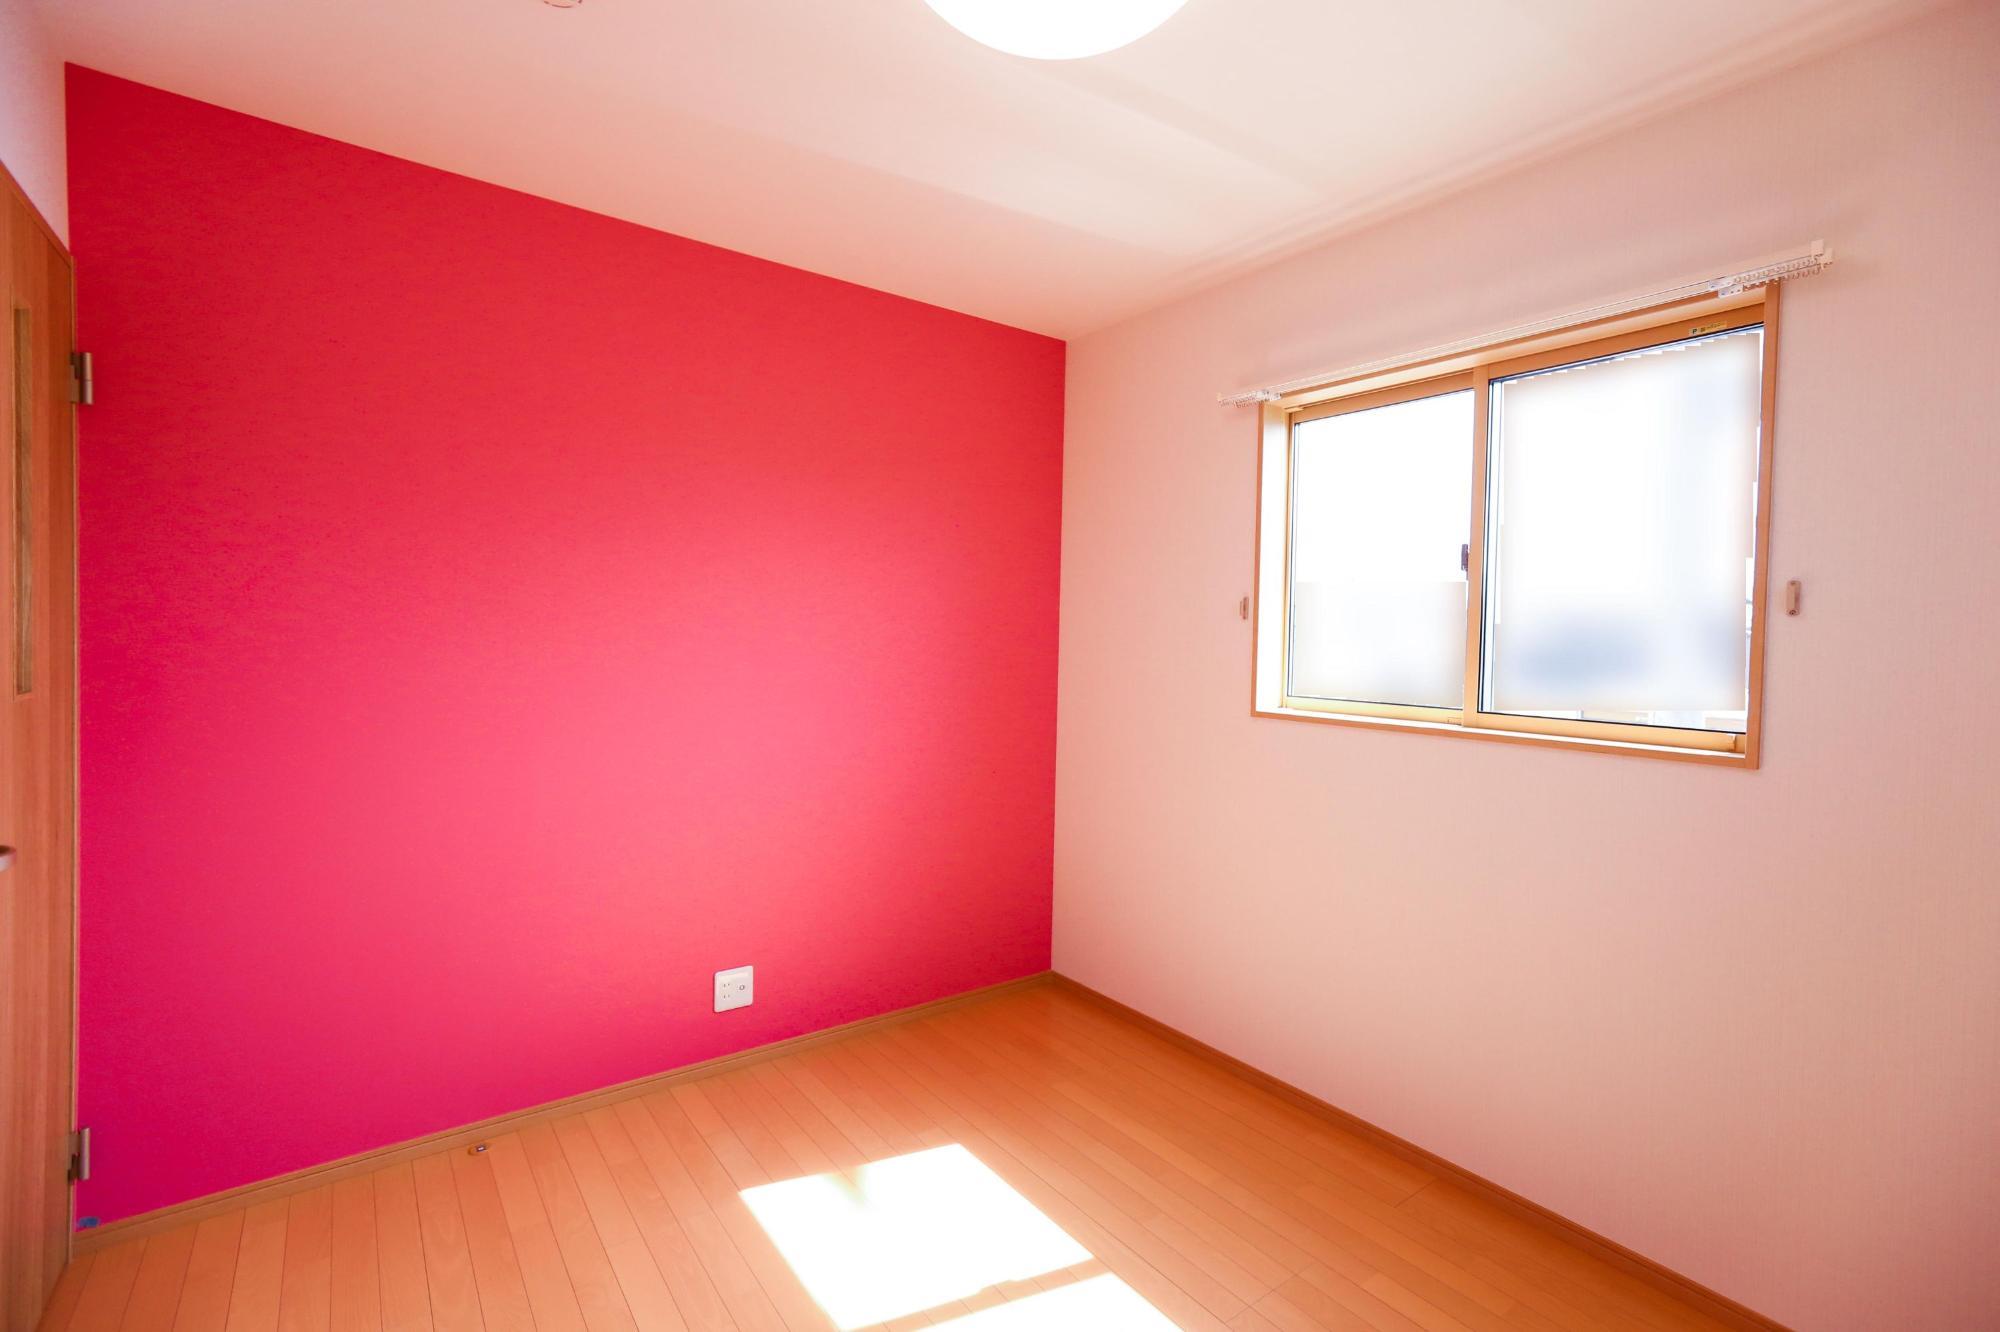 おしゃれなお家を彩る壁紙。代表的な素材と特徴・選び方を解説します